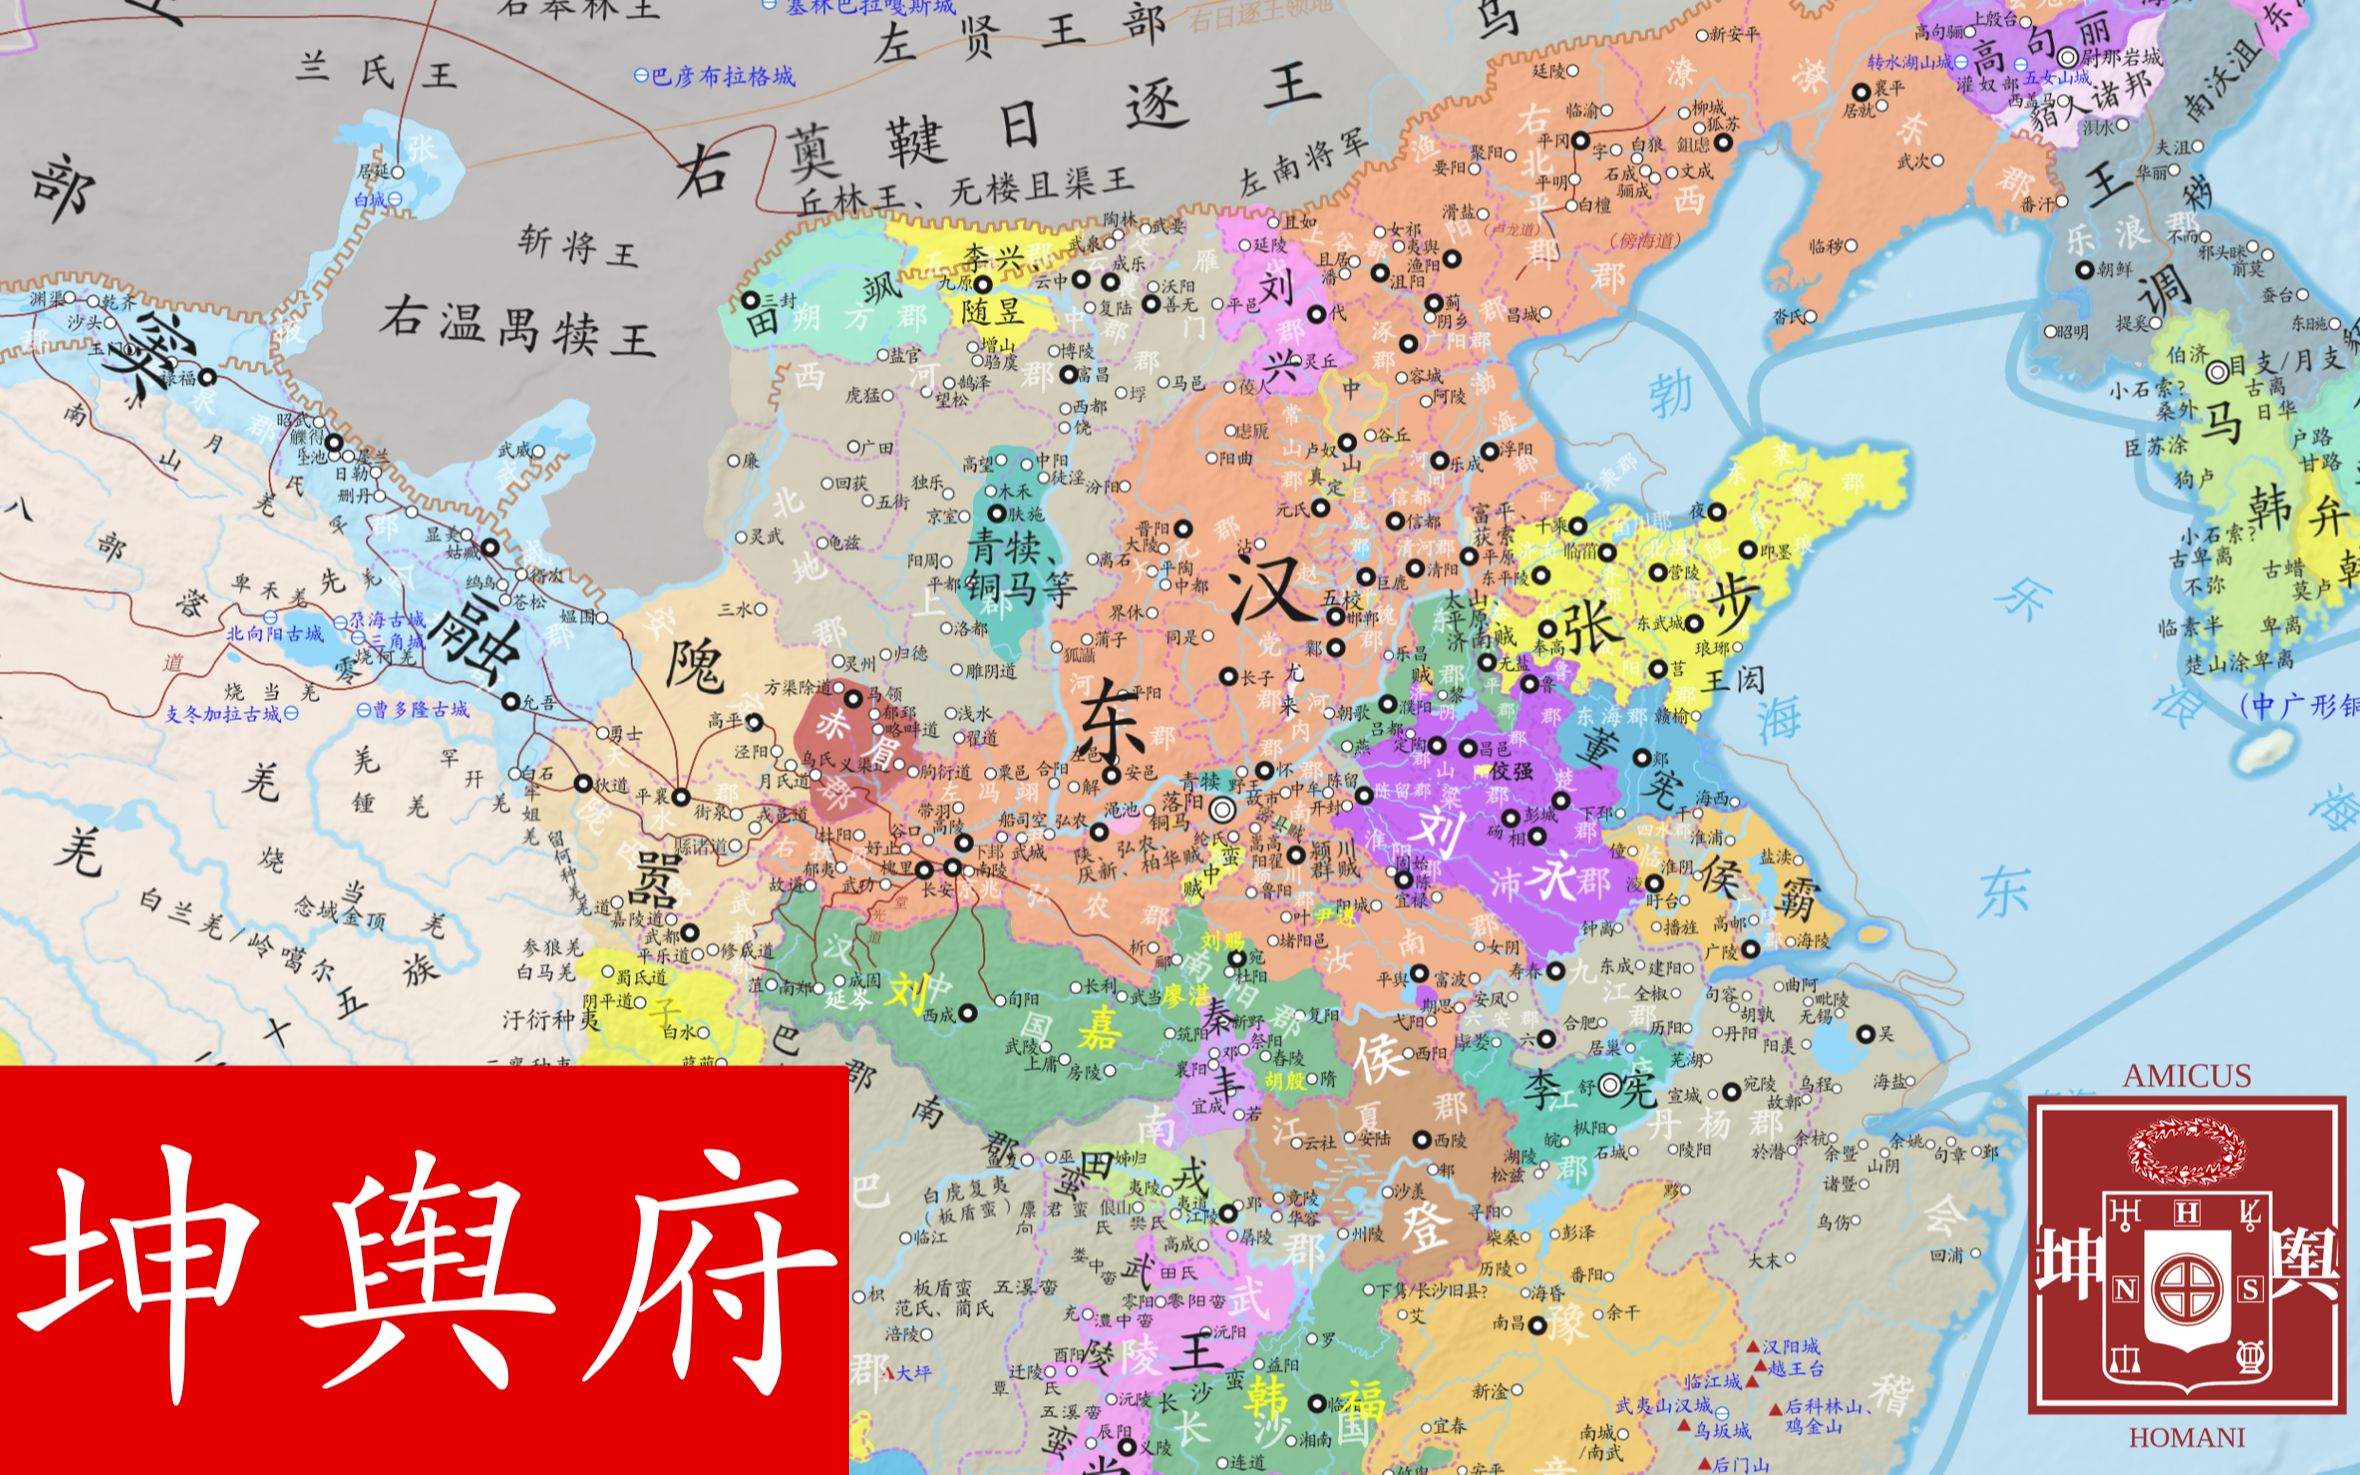 【4k】地图看刘秀光复大汉历程—东汉疆域变化